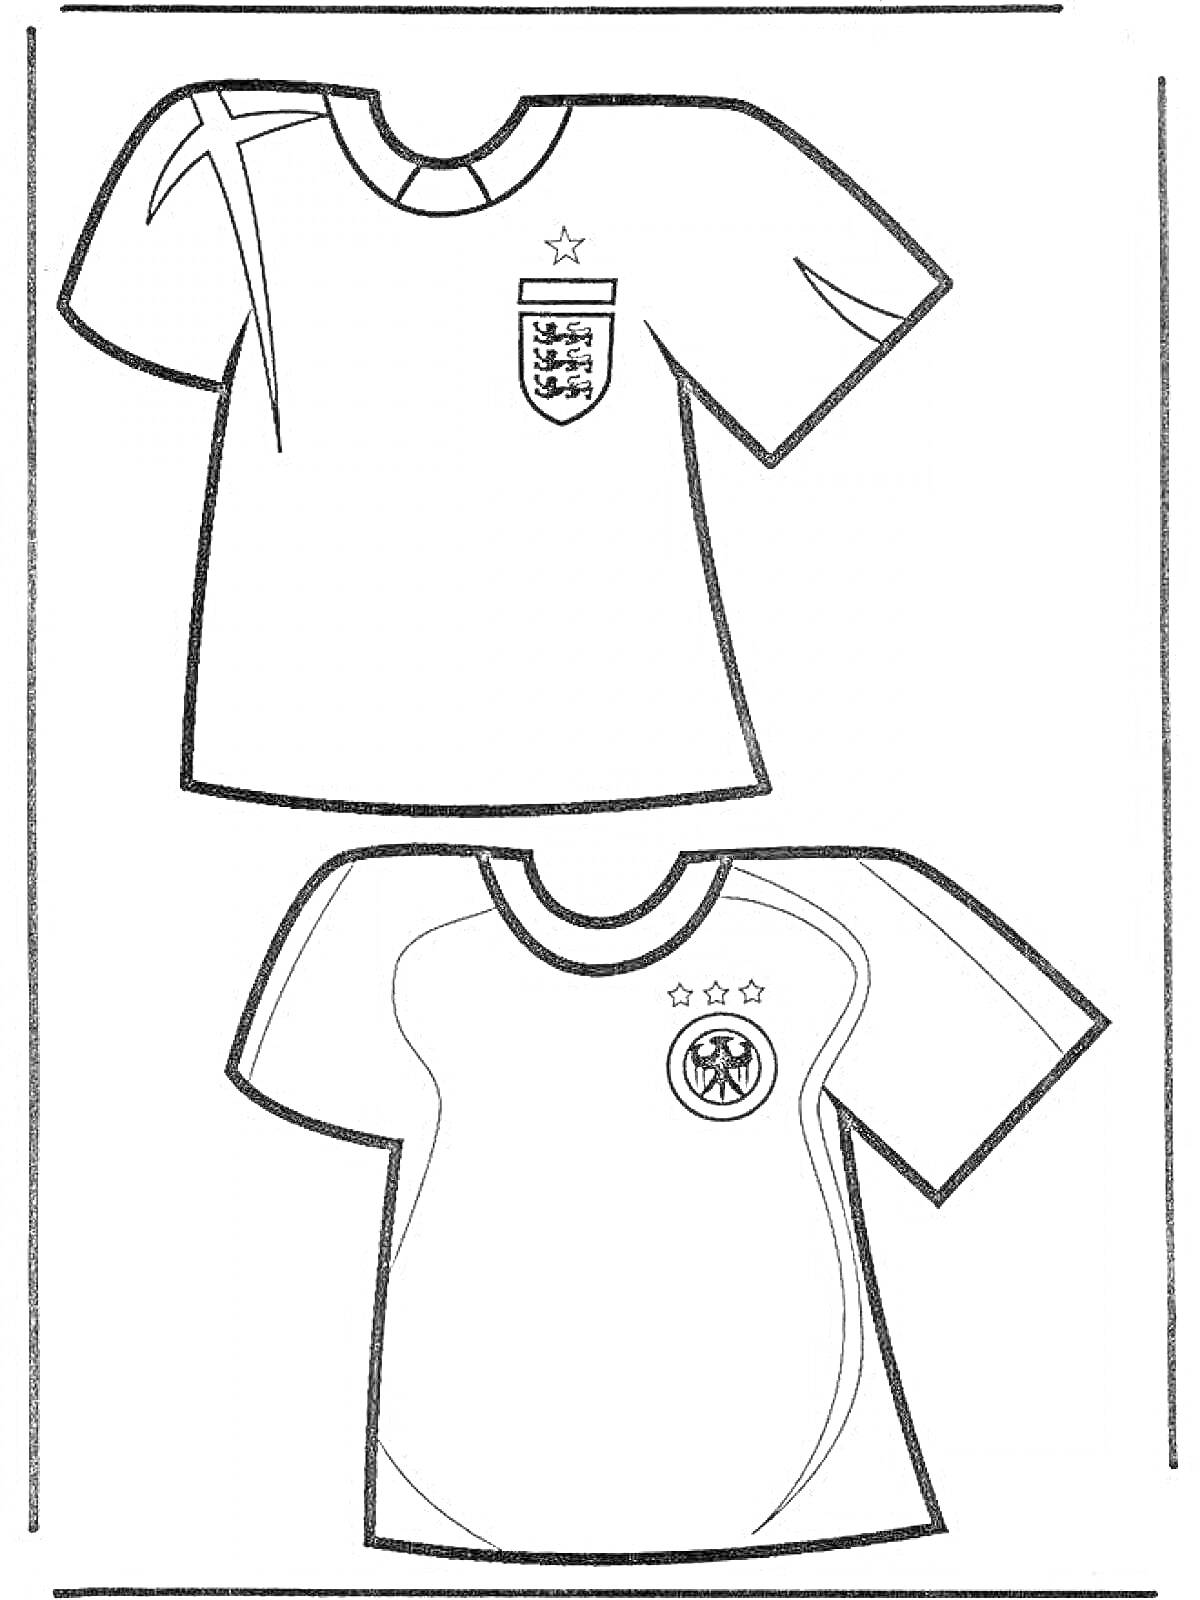 Раскраска Футбольная форма двух команд - №1 со звездой, узором на плече и гербом с изображением львов, команда №2 - с тремя звездами и гербом с орлом